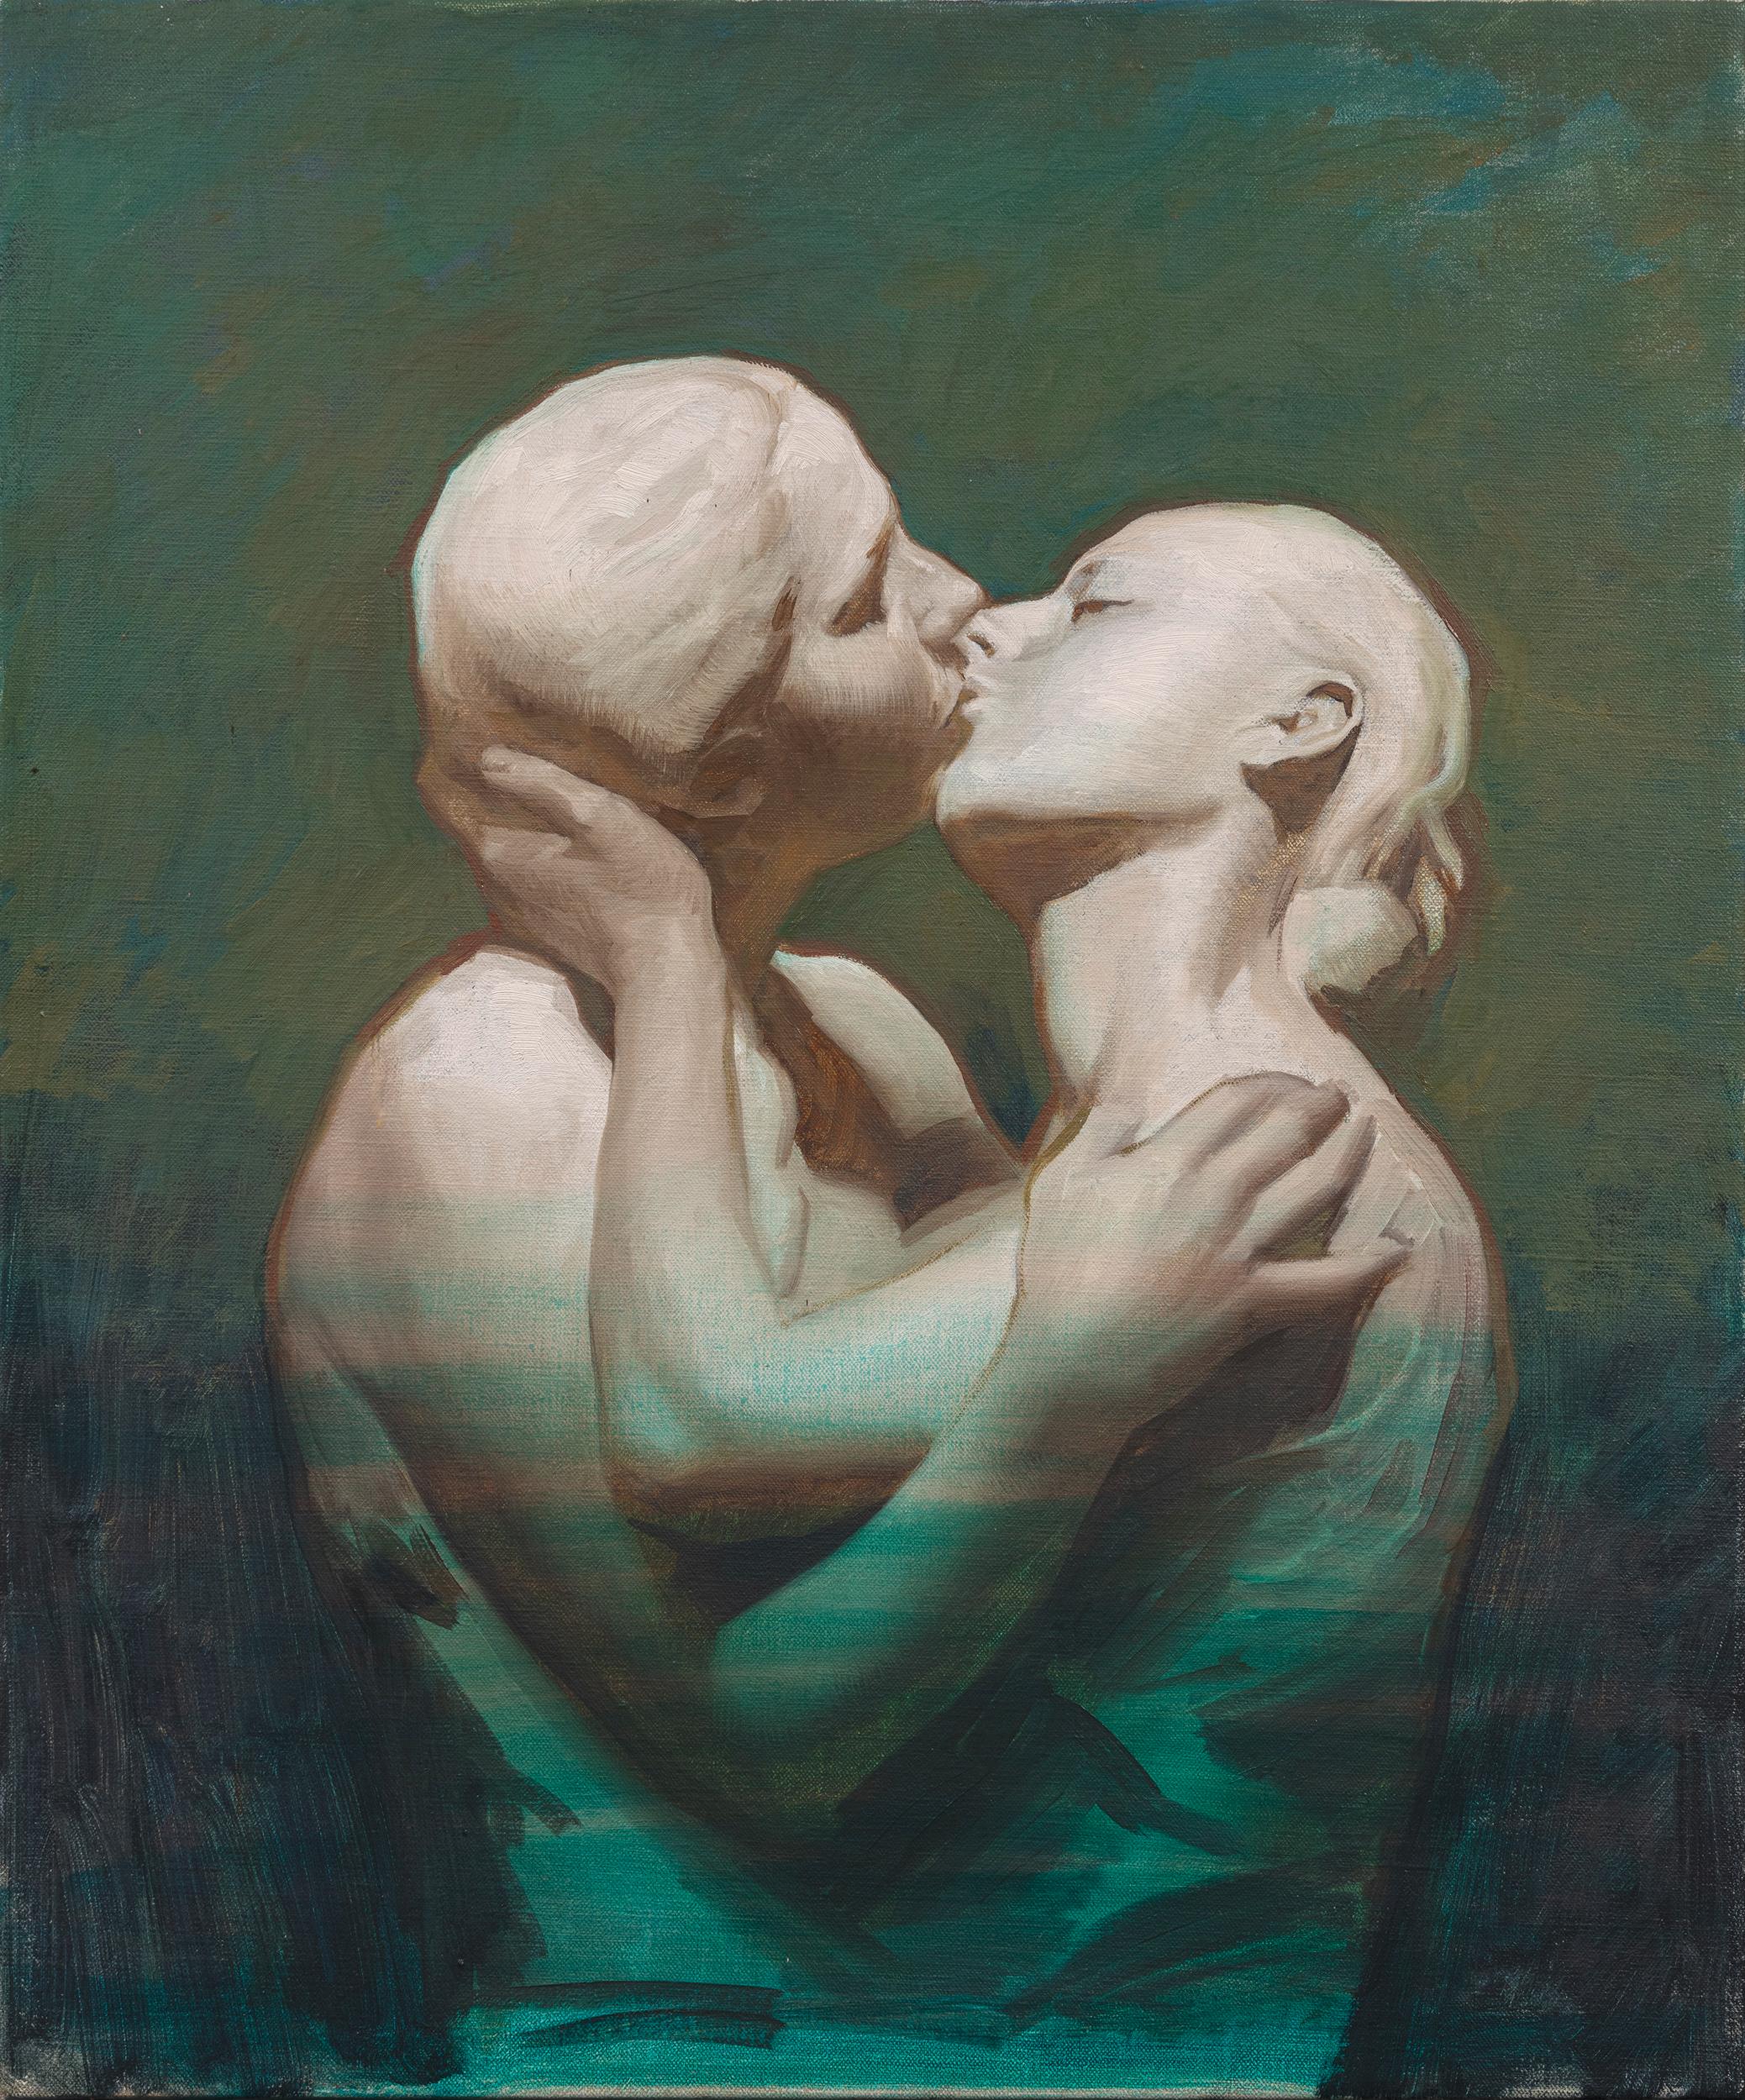 Nude Painting Daniela Astone - Hommage à la sculpture Alimondo Ciampi- Peinture contemporaine du 21ème siècle 